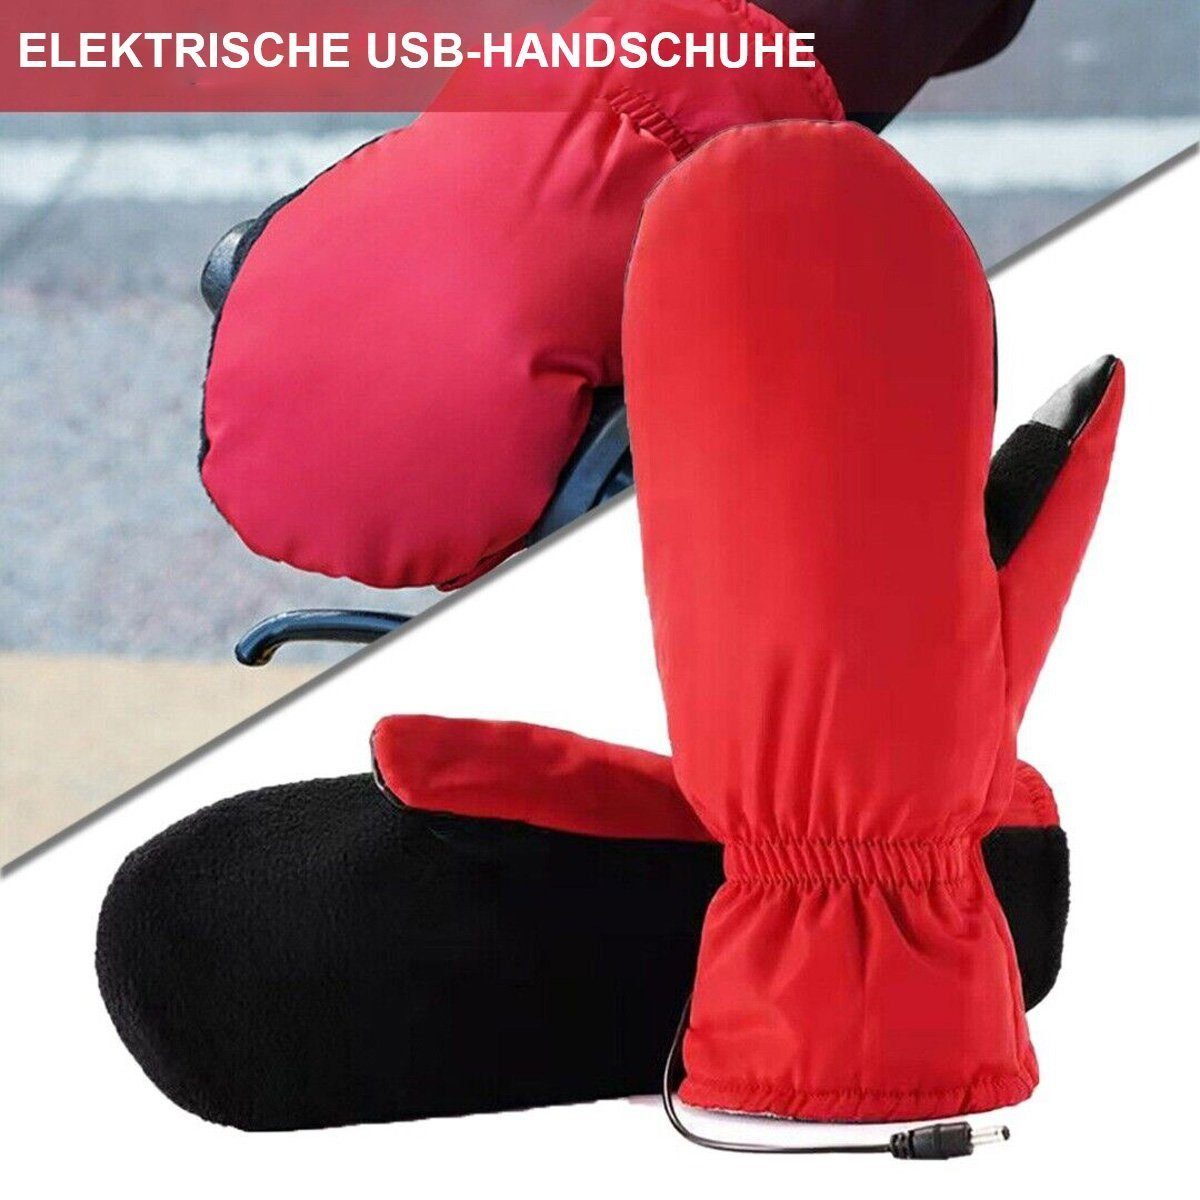 Handschuhe Elektrisch schwarz AUKUU Sporthandschuhe beheizte Lederhandschuhe Multisporthandschuhe